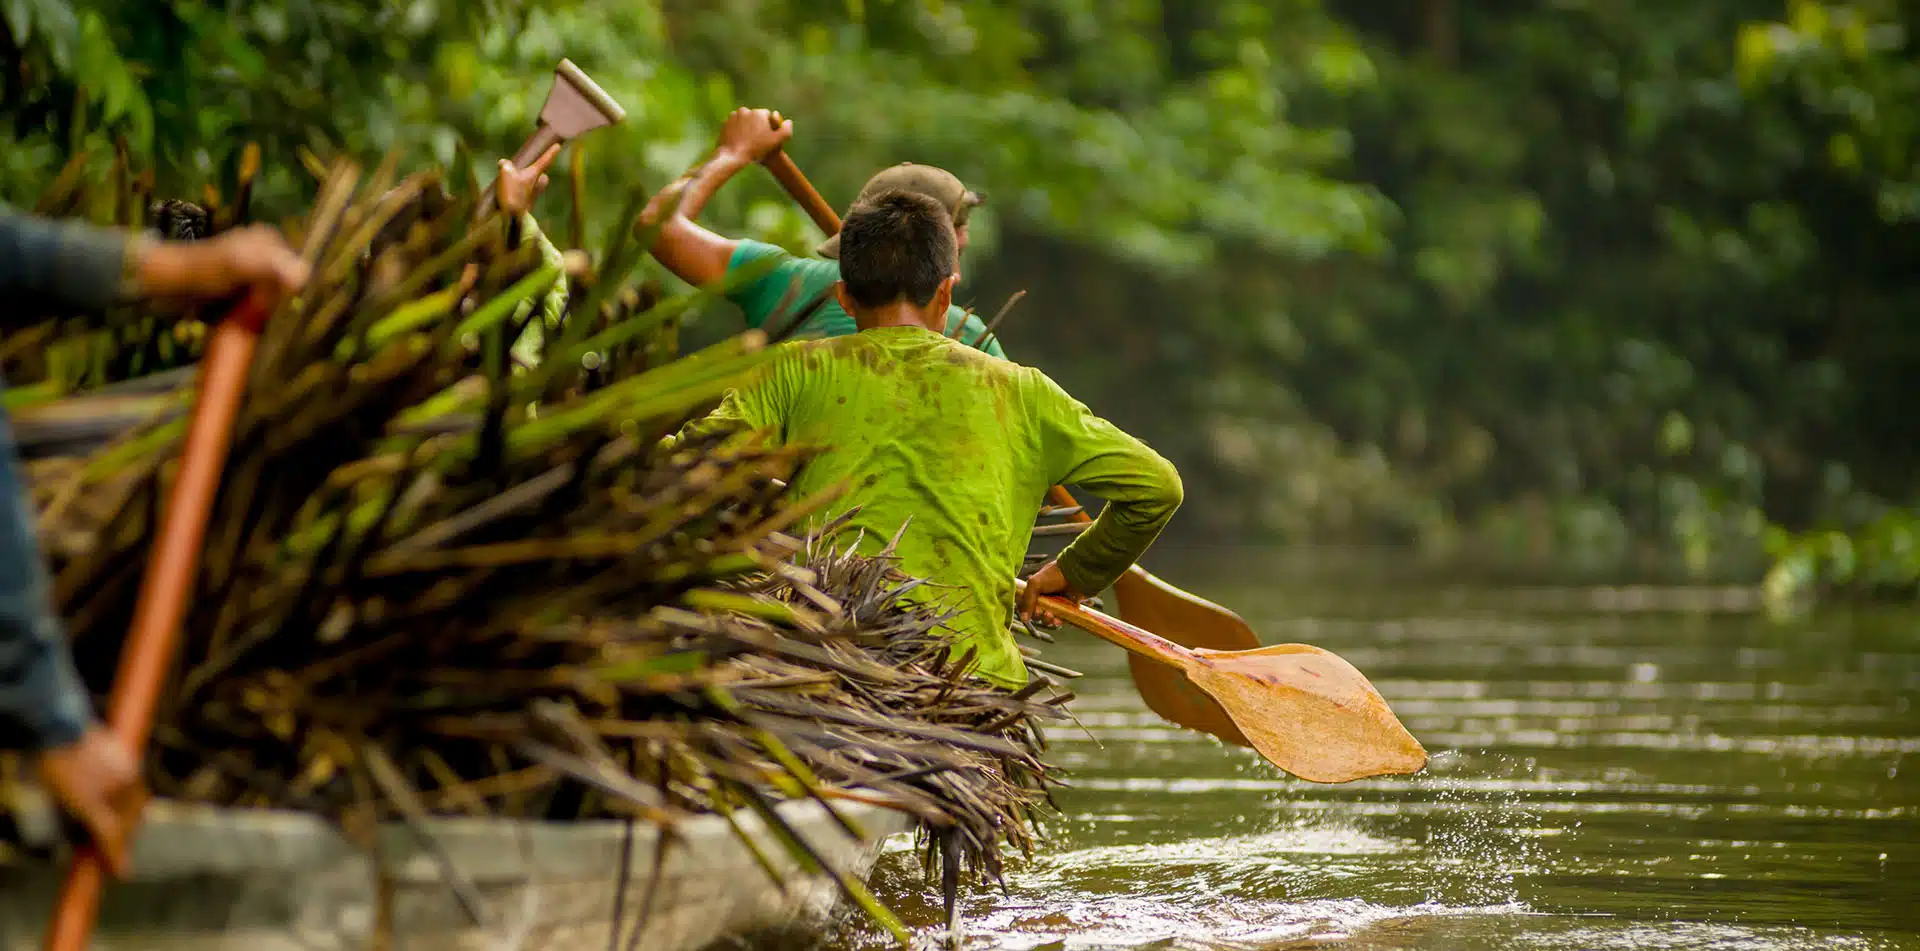 Canoe in Yasuni National Park in Ecuador